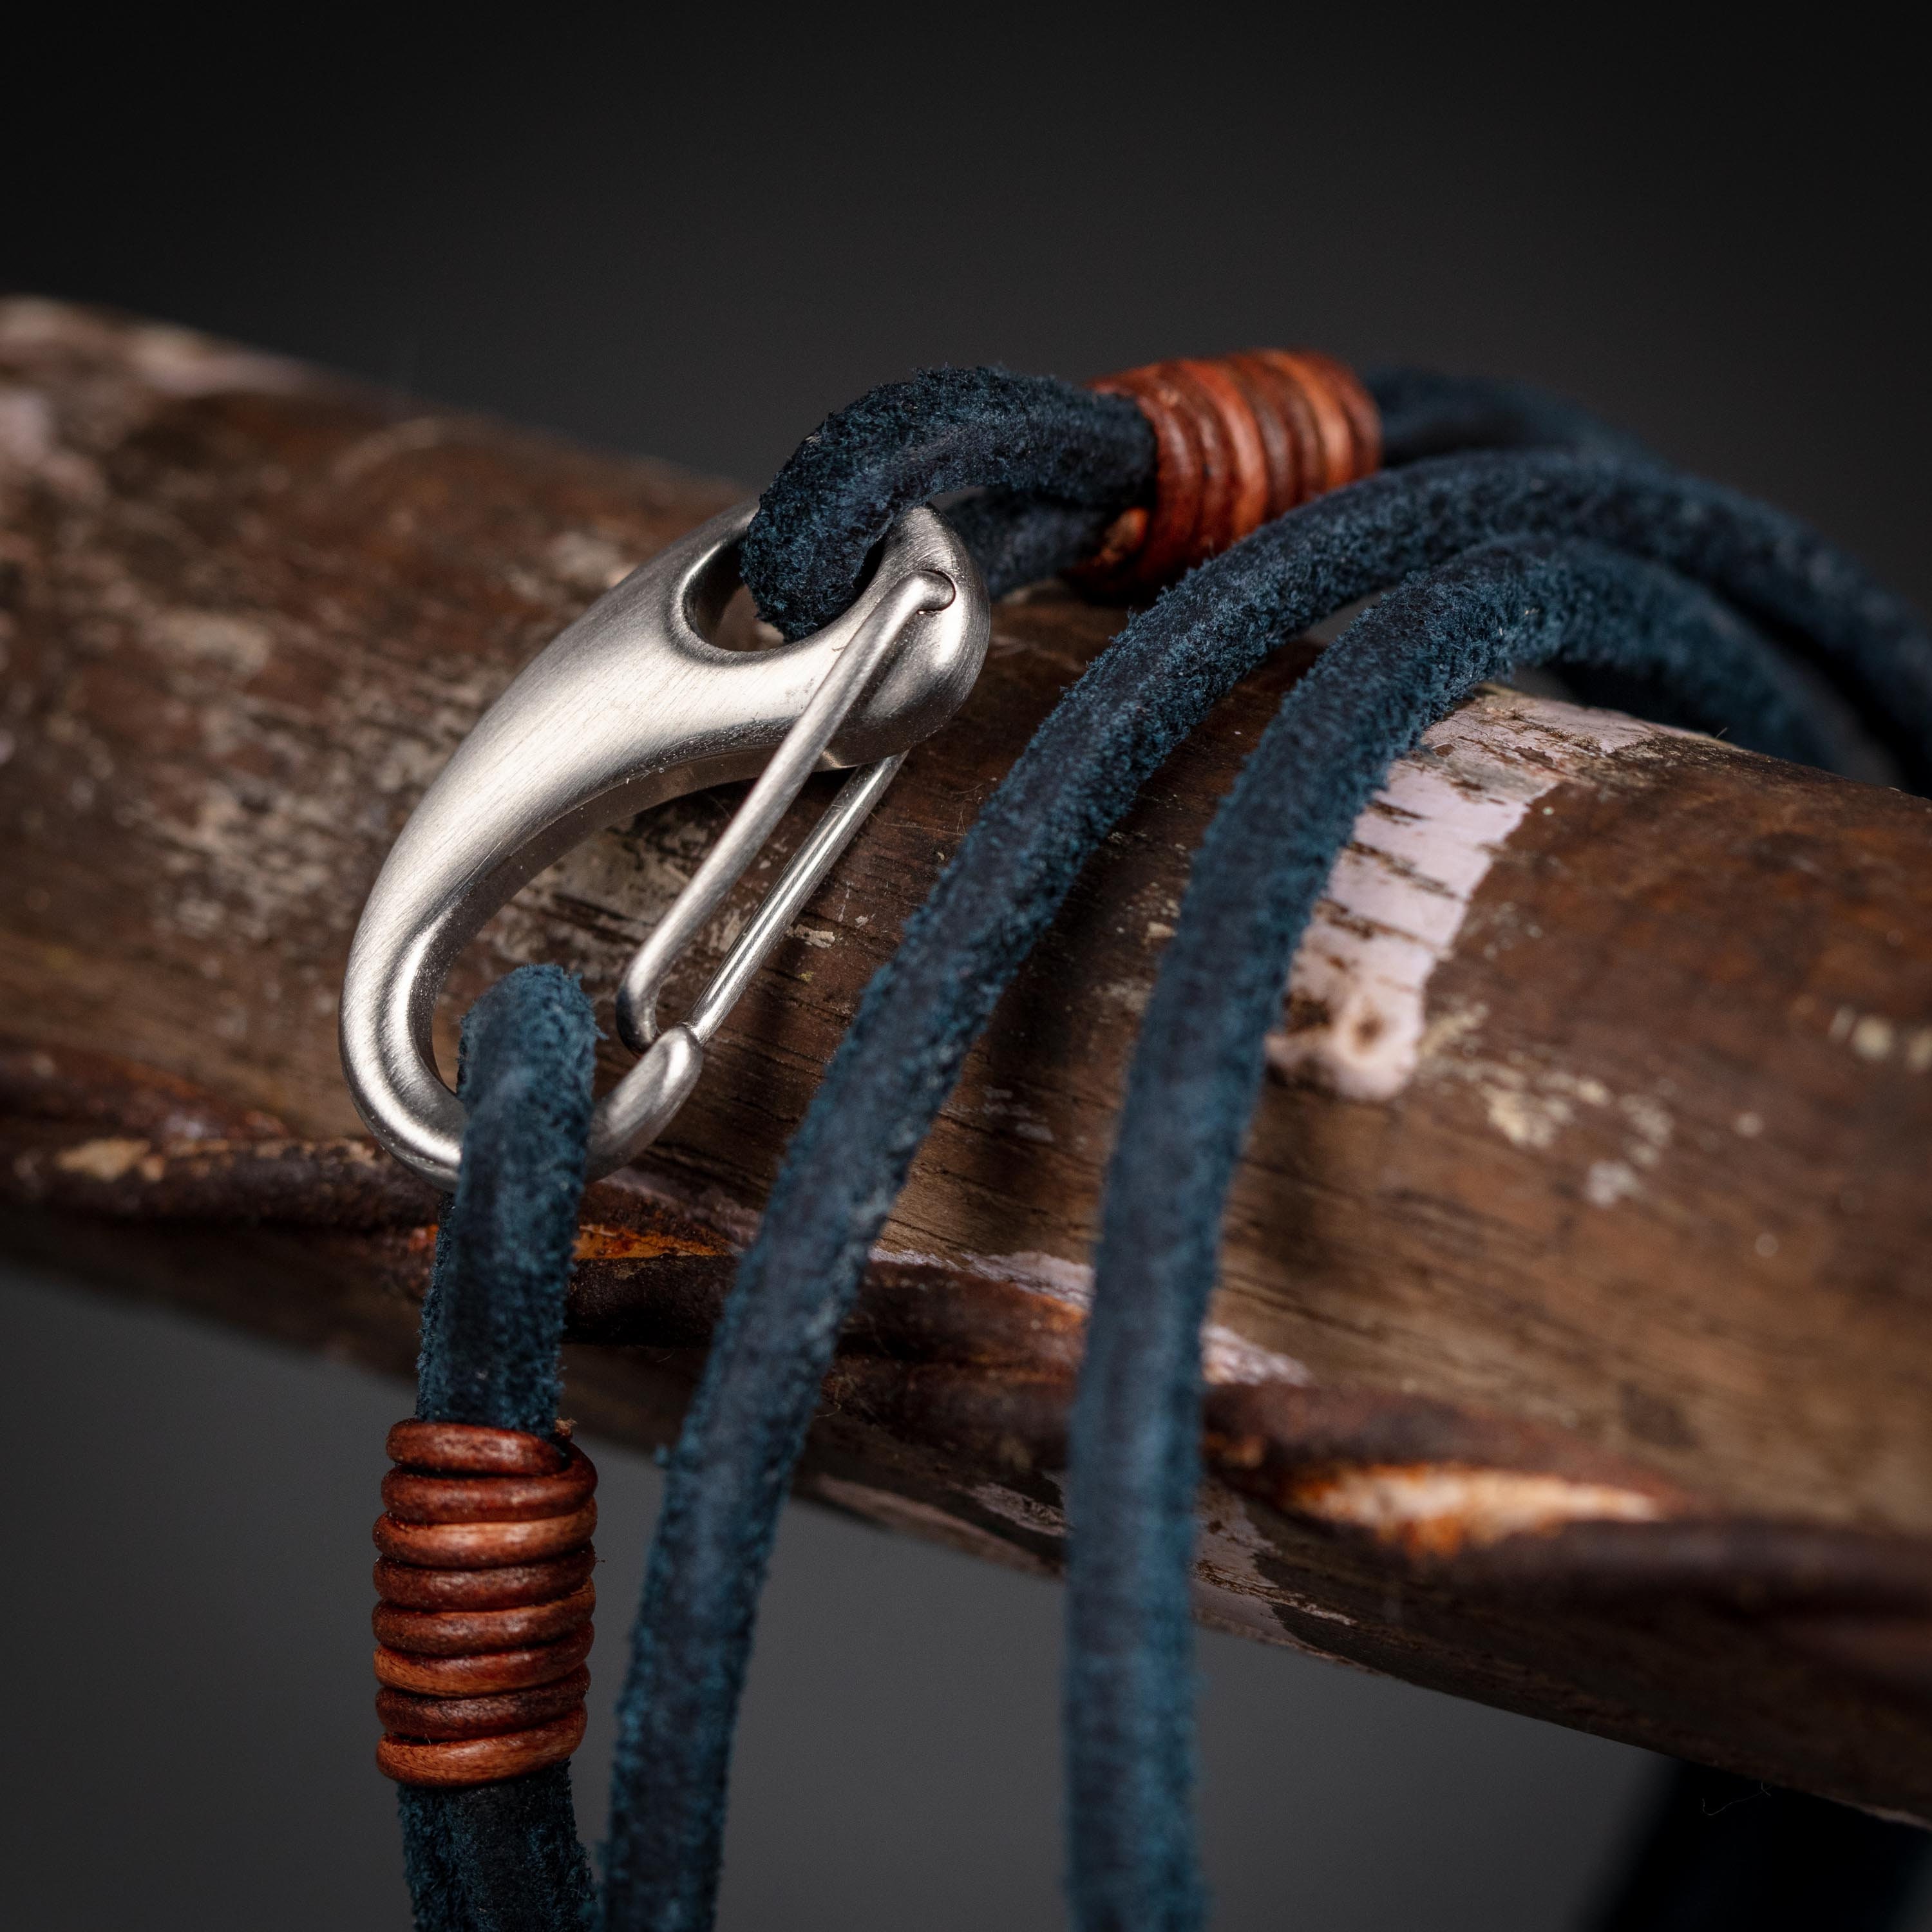 Men's Suede Leather Double Wrap Bracelet